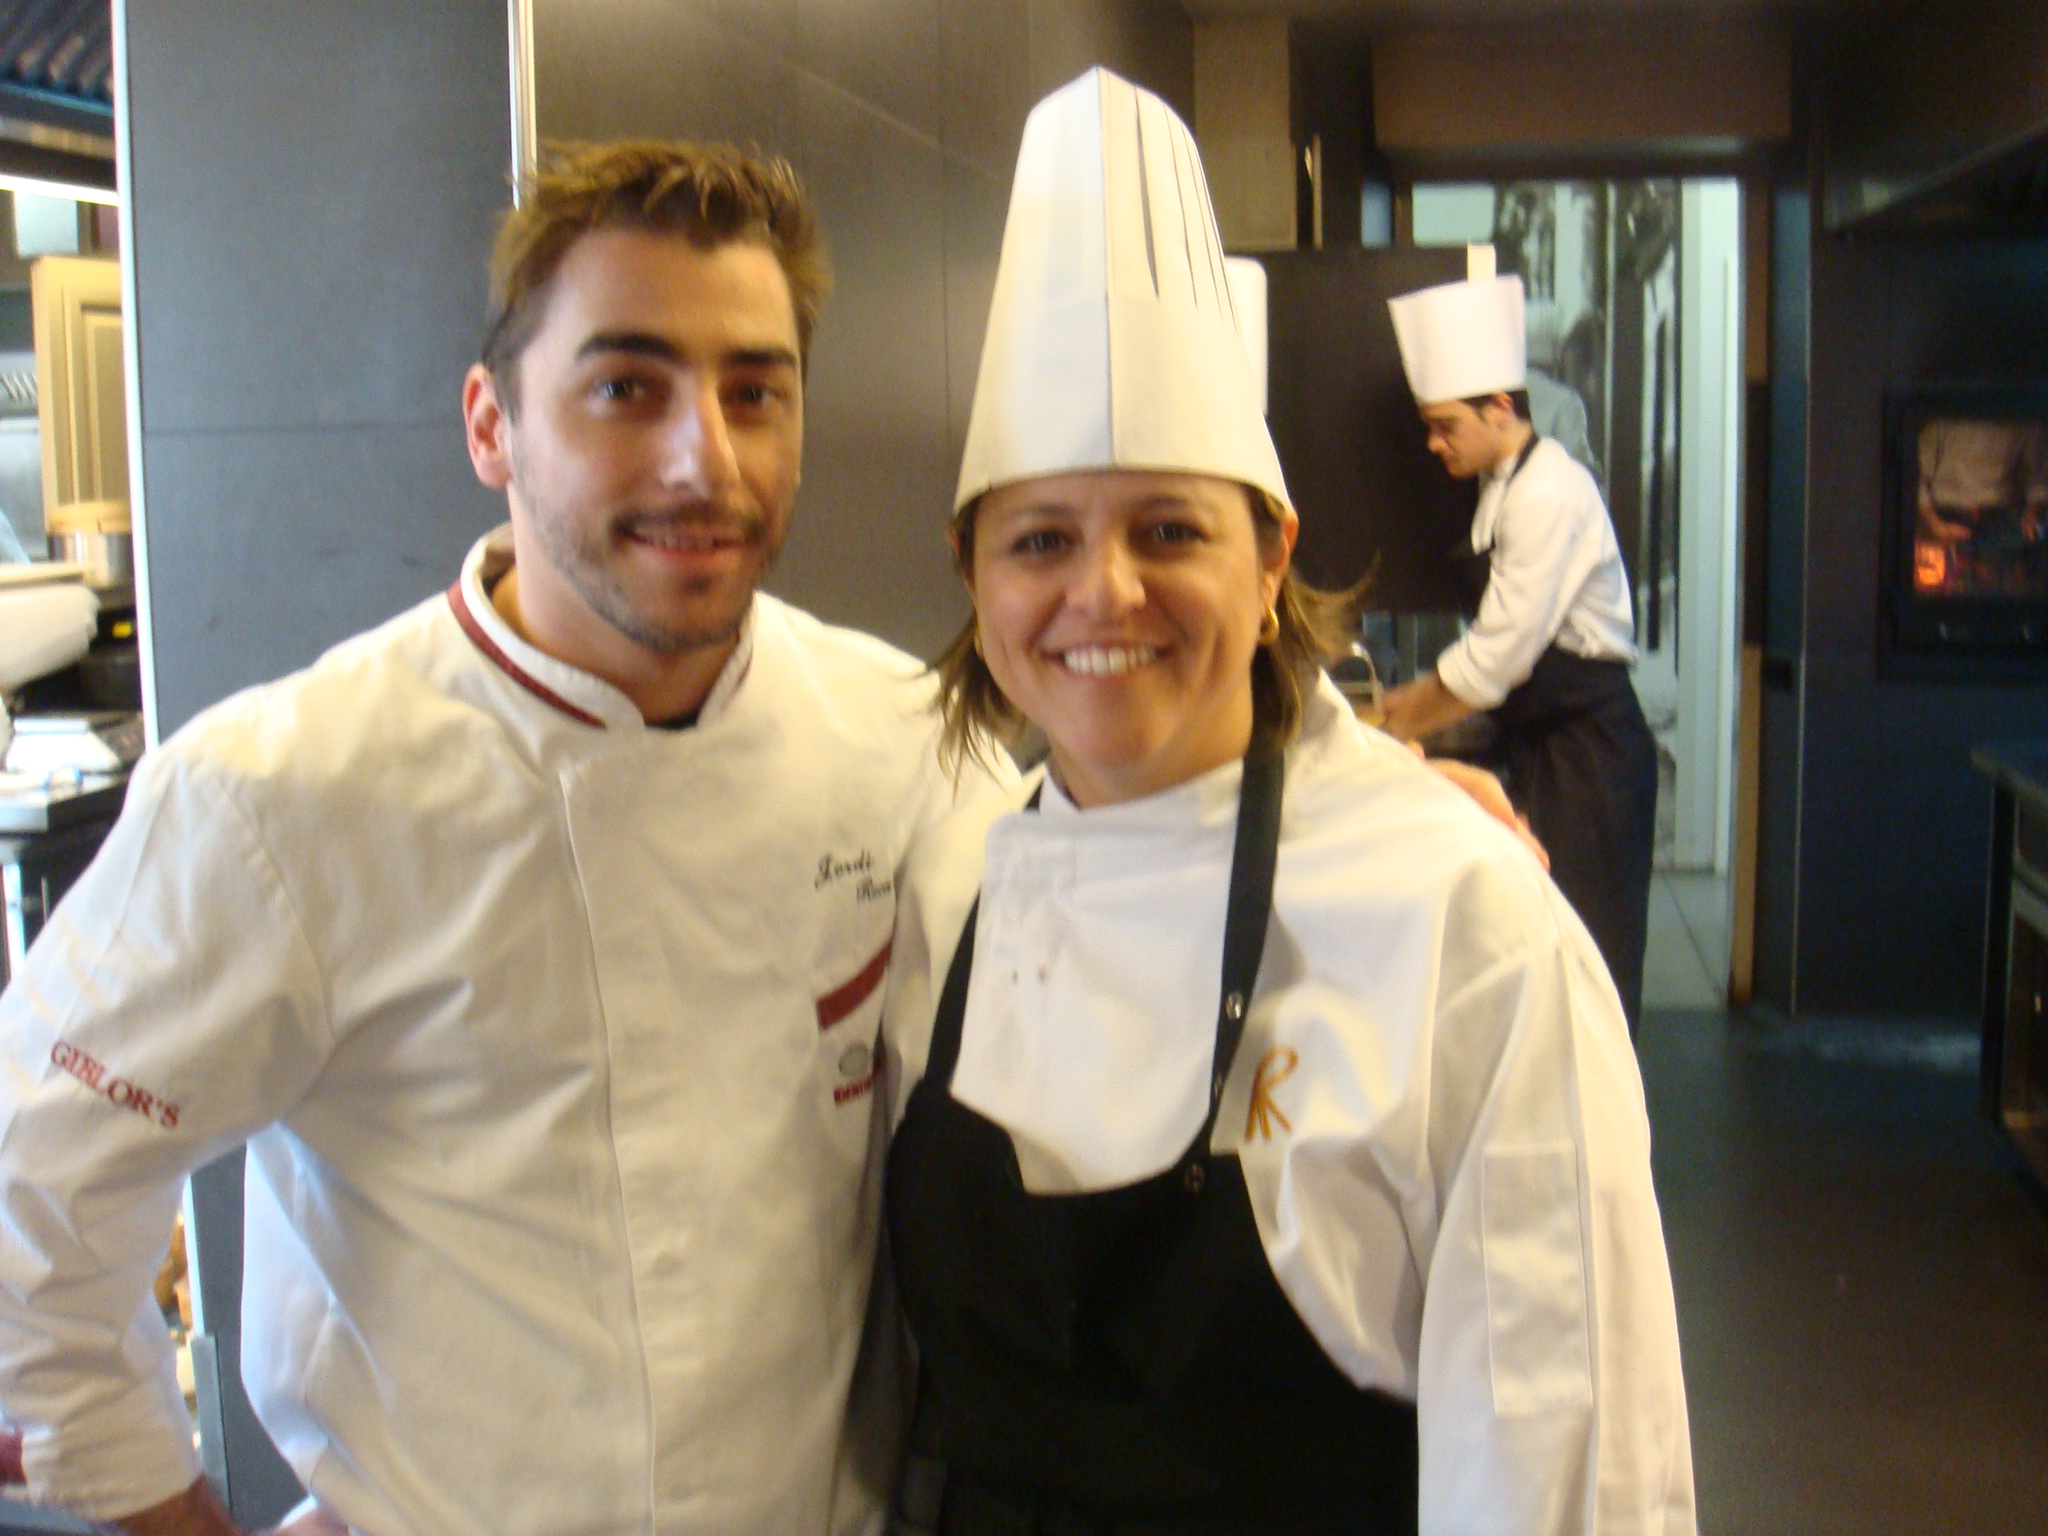 Adelaide Engler and Chef Jordi Roca, during internship at El Celler de Can Roca – Girona, Spain